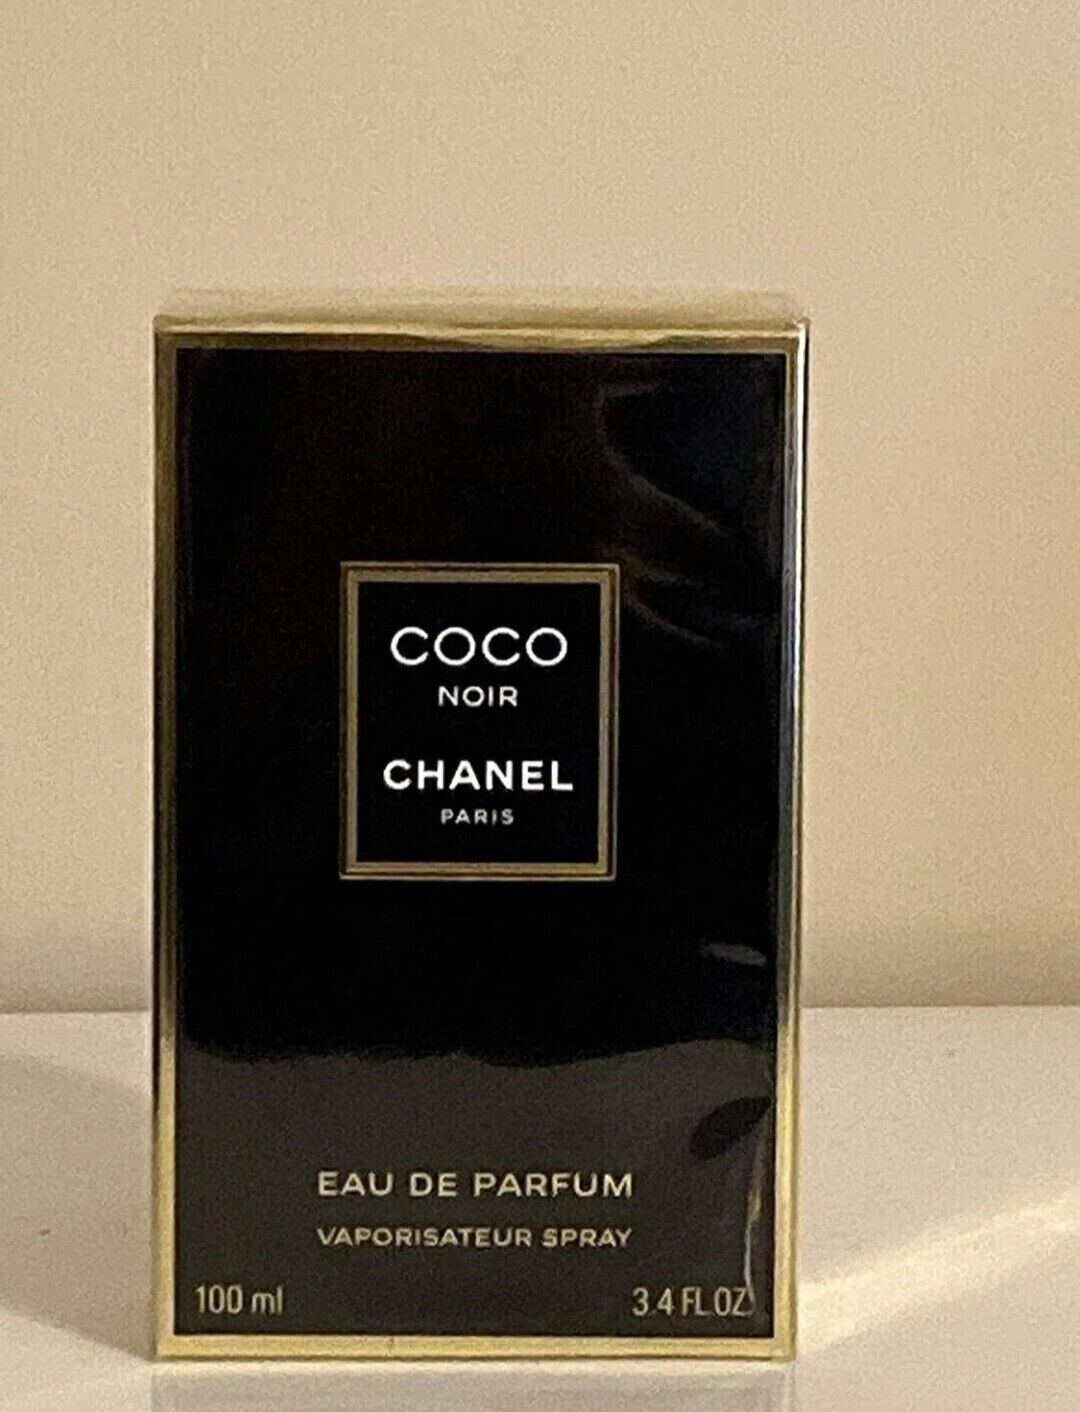 COCO NOIR by CHANEL 3.4 FL oz/ 100 ML Eau De Parfum Spray BRAND NEW SEALED!